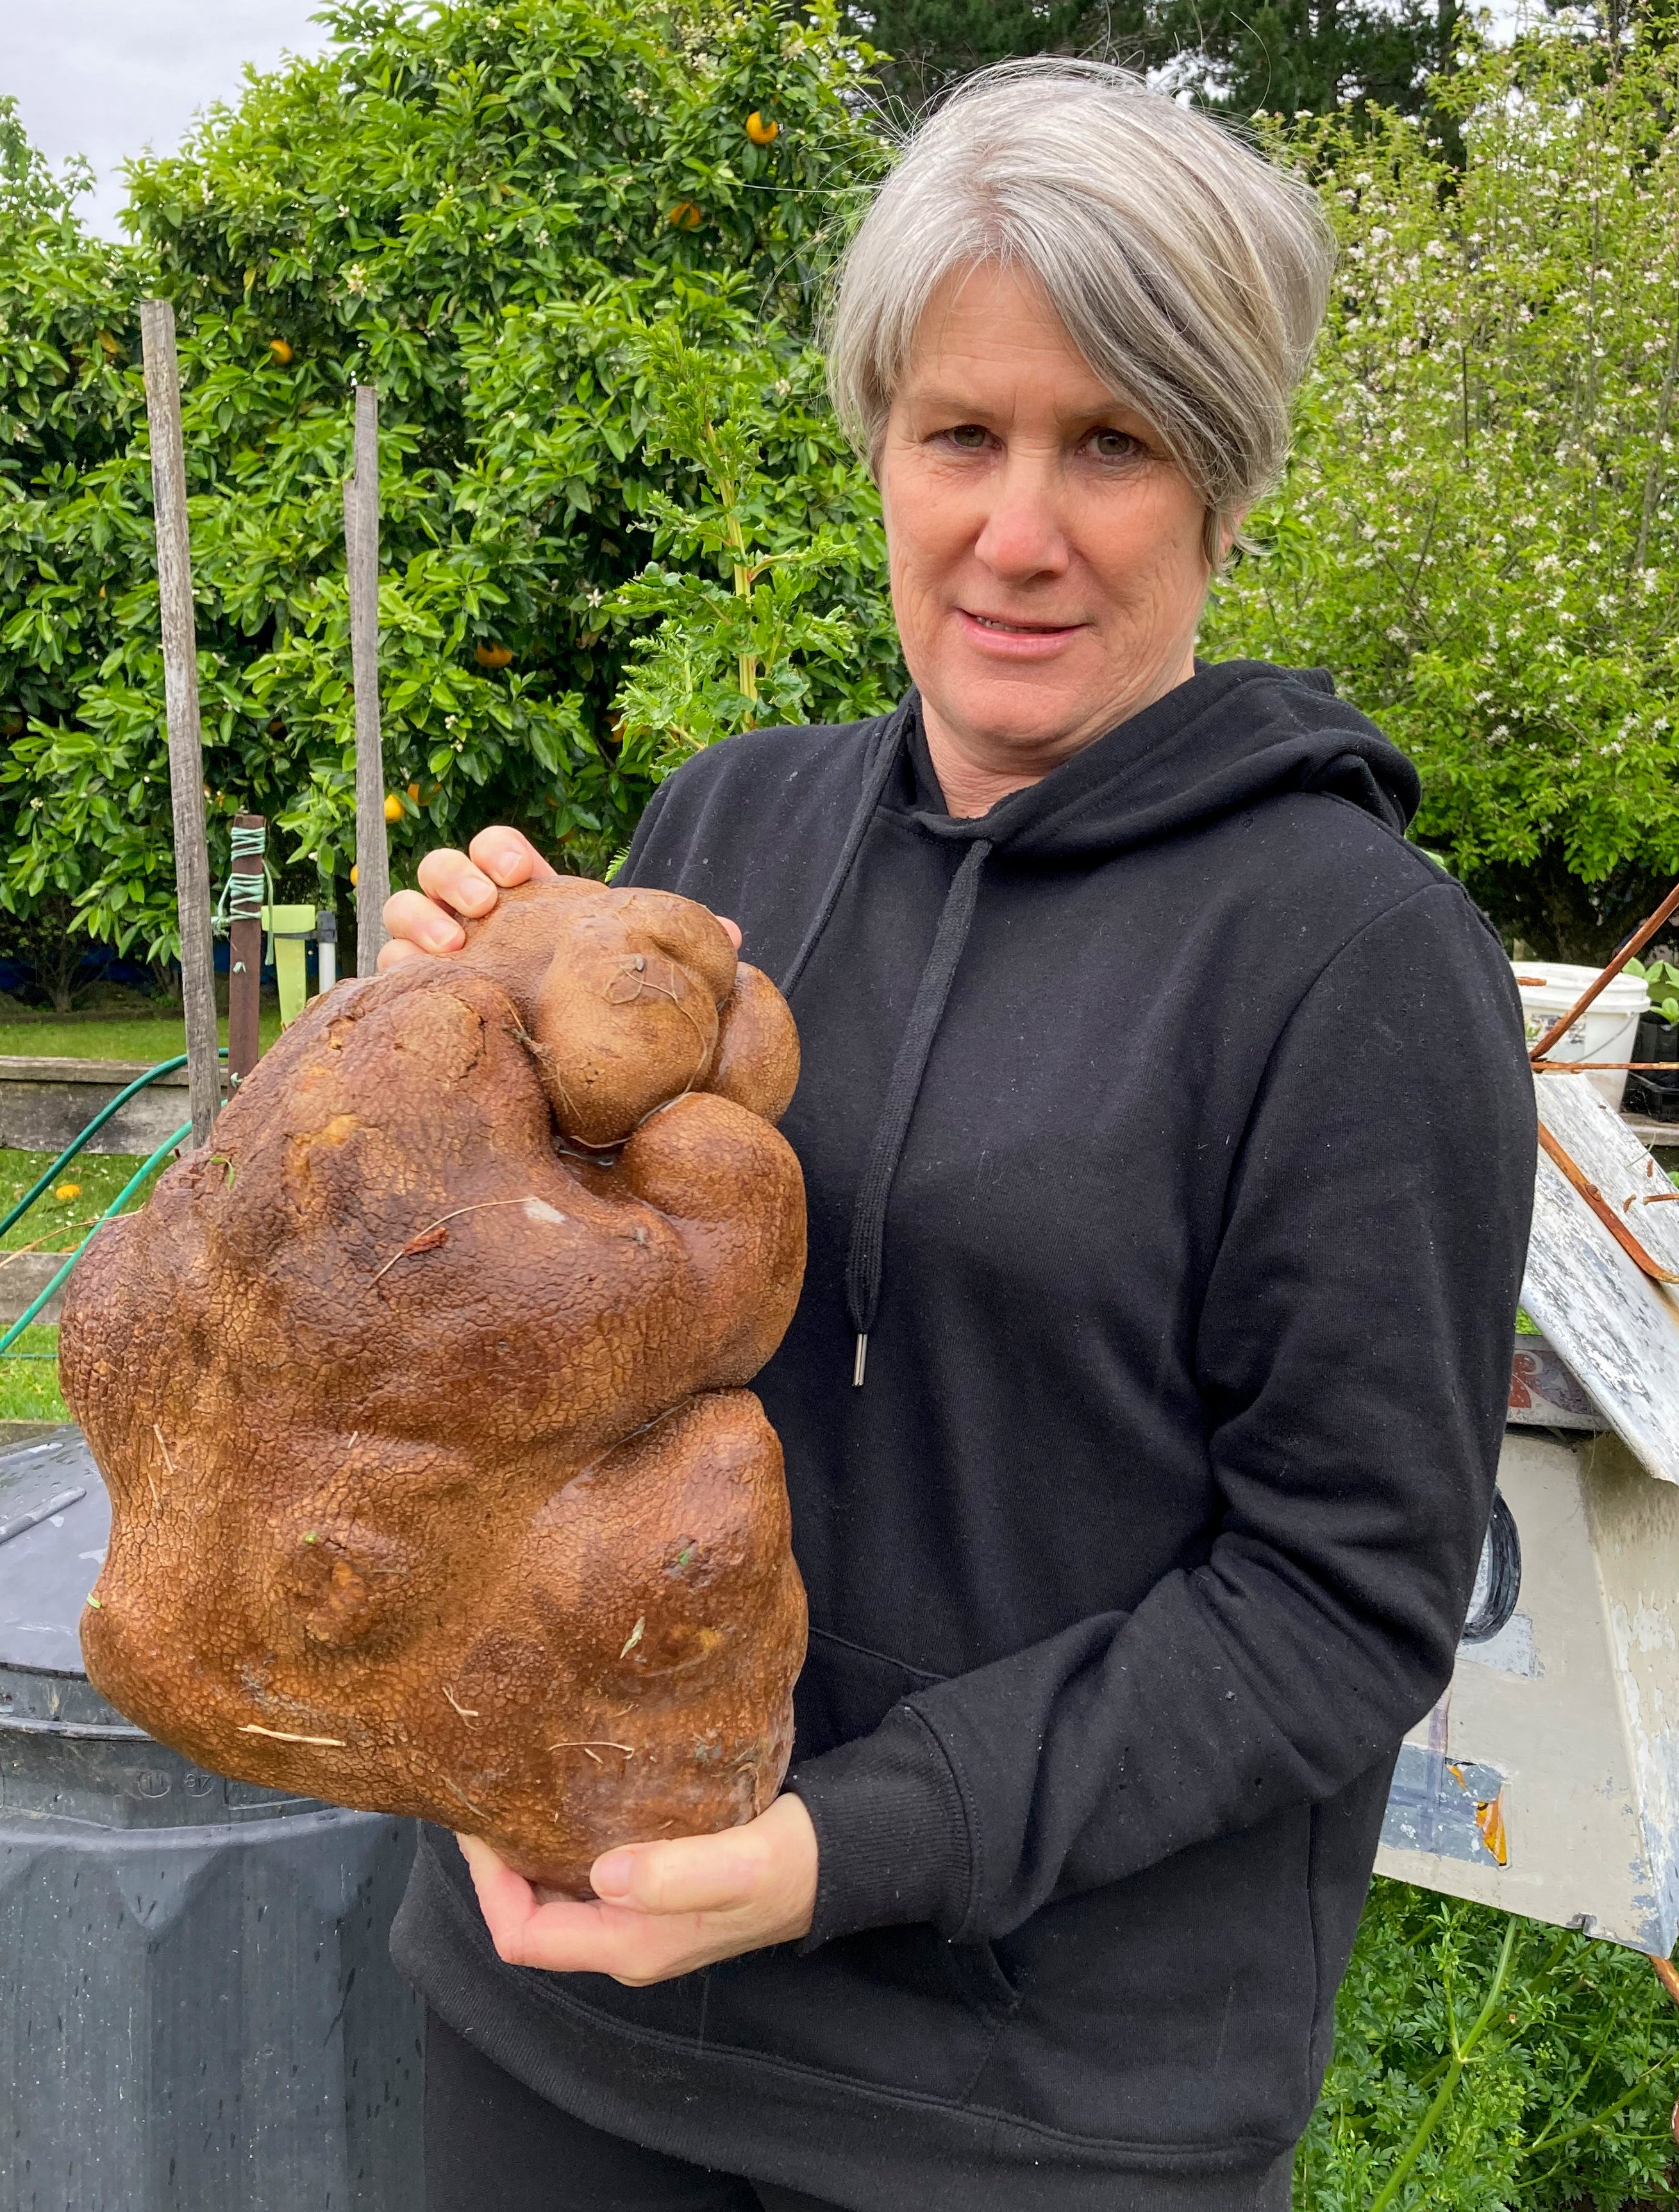 New Zealand Huge Potato